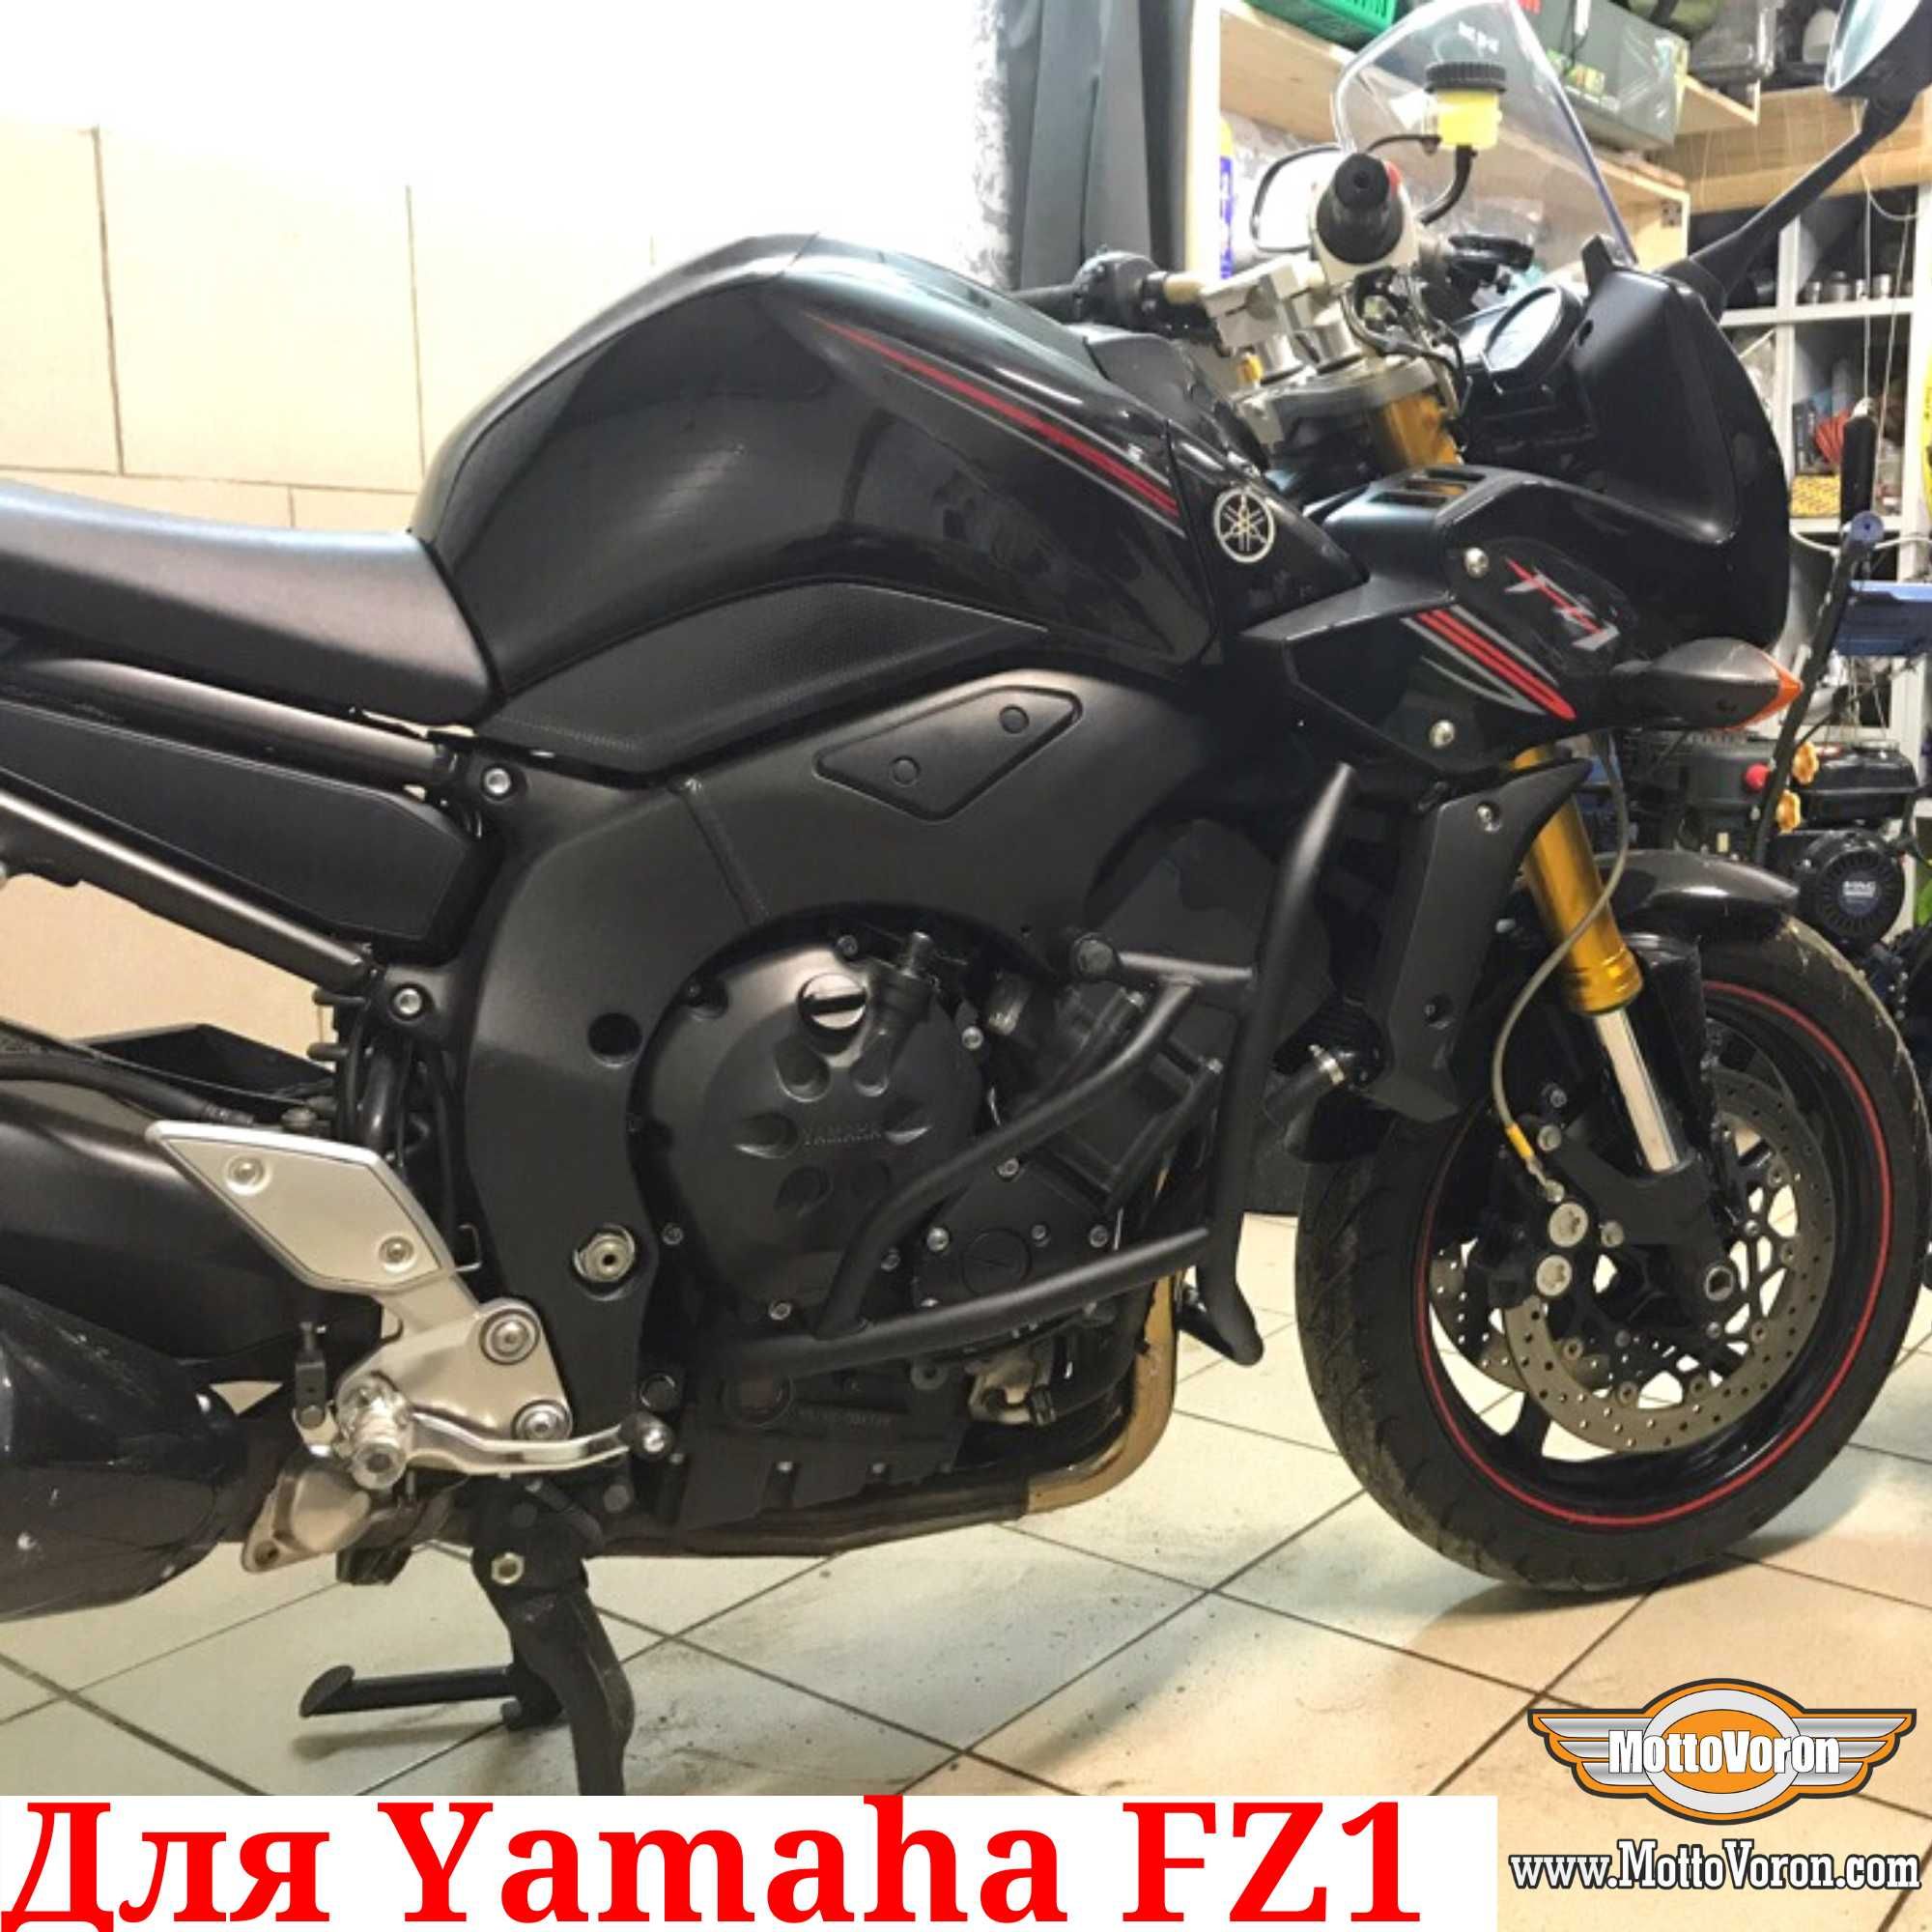 Защитные дуги Yamaha FZ1 N FZ1 S Fazer клетка защита FZS 1000 обвес